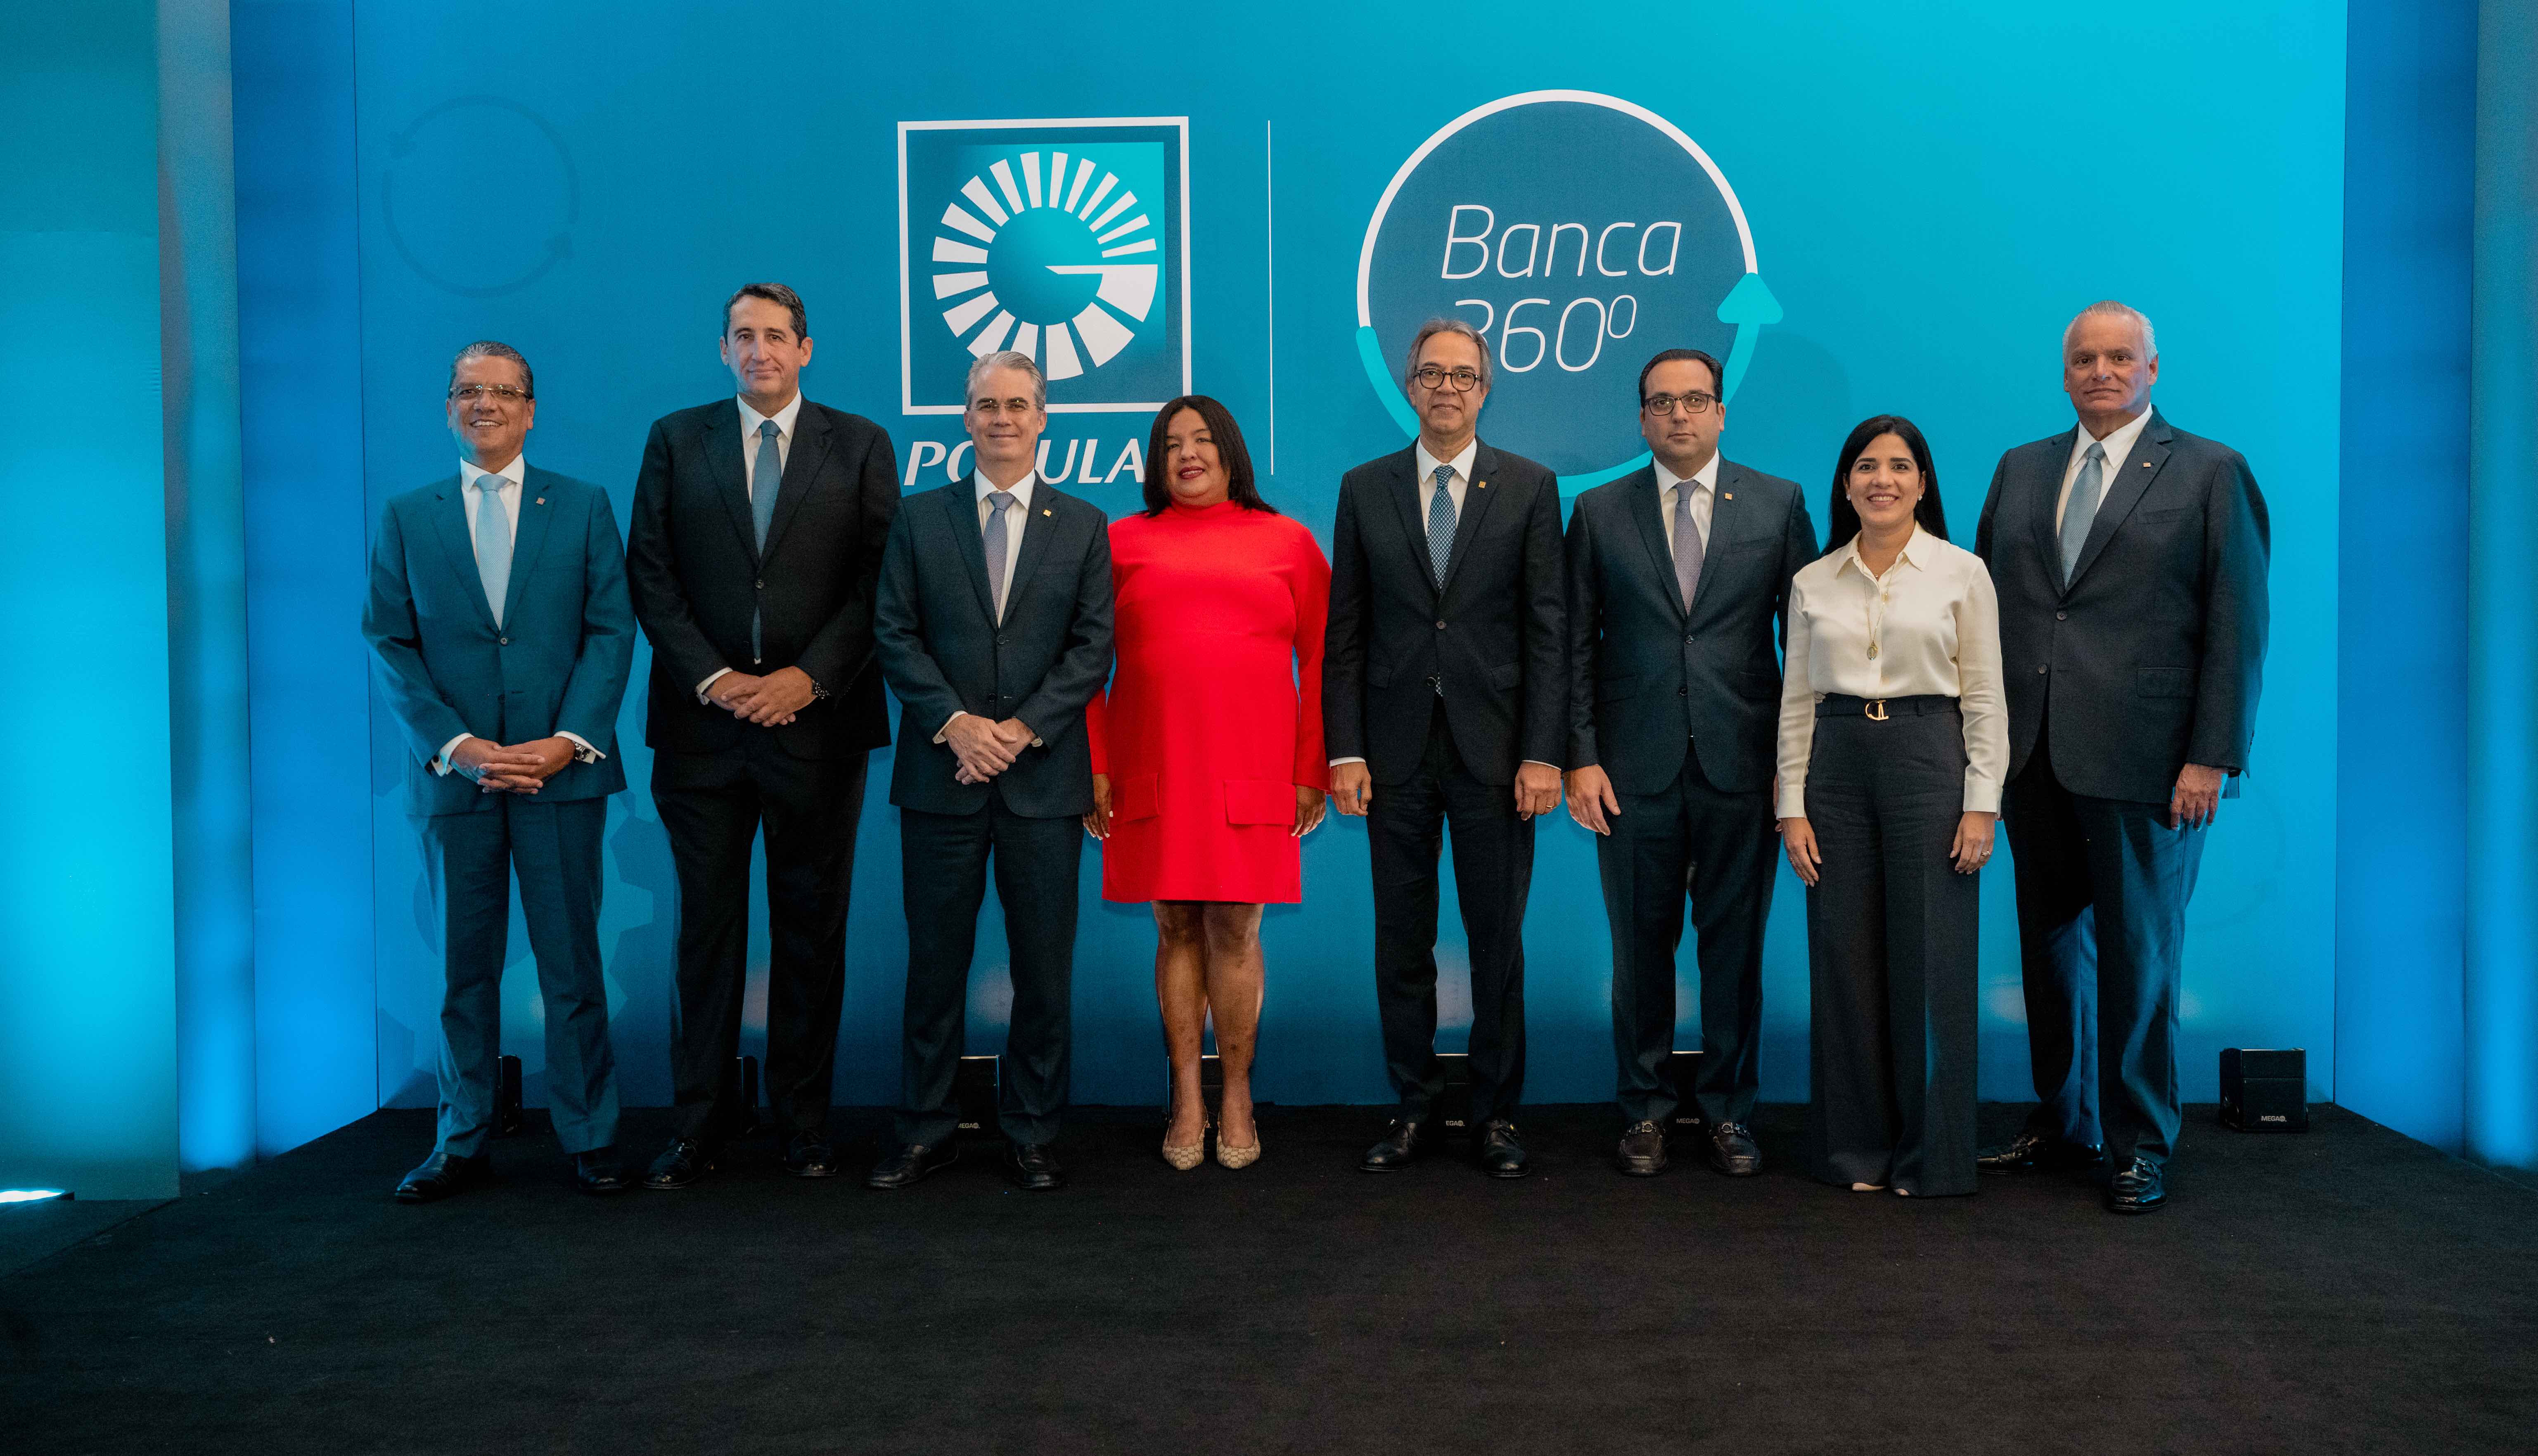  Popular celebra encuentro Banca 360 en Santiago 